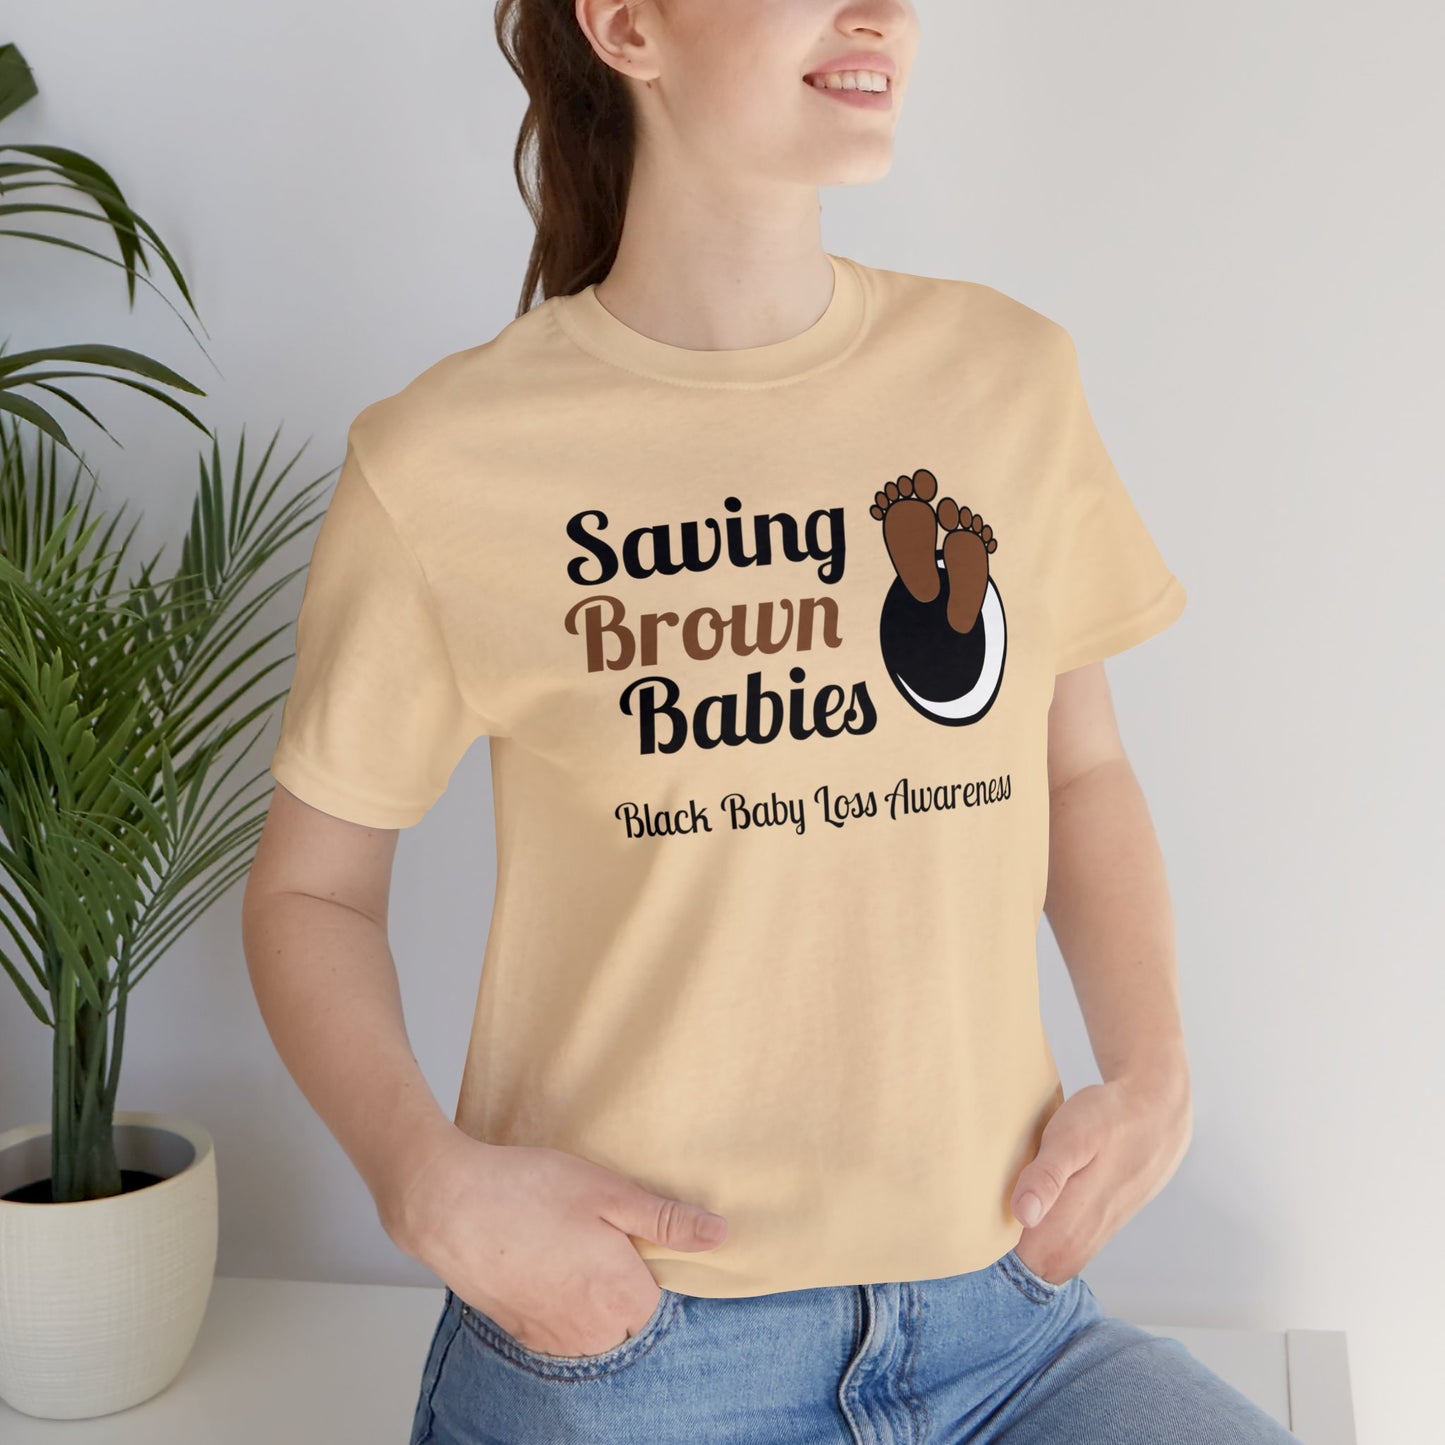 Quietly United in Loss Together Camiseta benéfica sin fines de lucro / Saving Brown Babies, Concientización sobre la pérdida del embarazo y del bebé